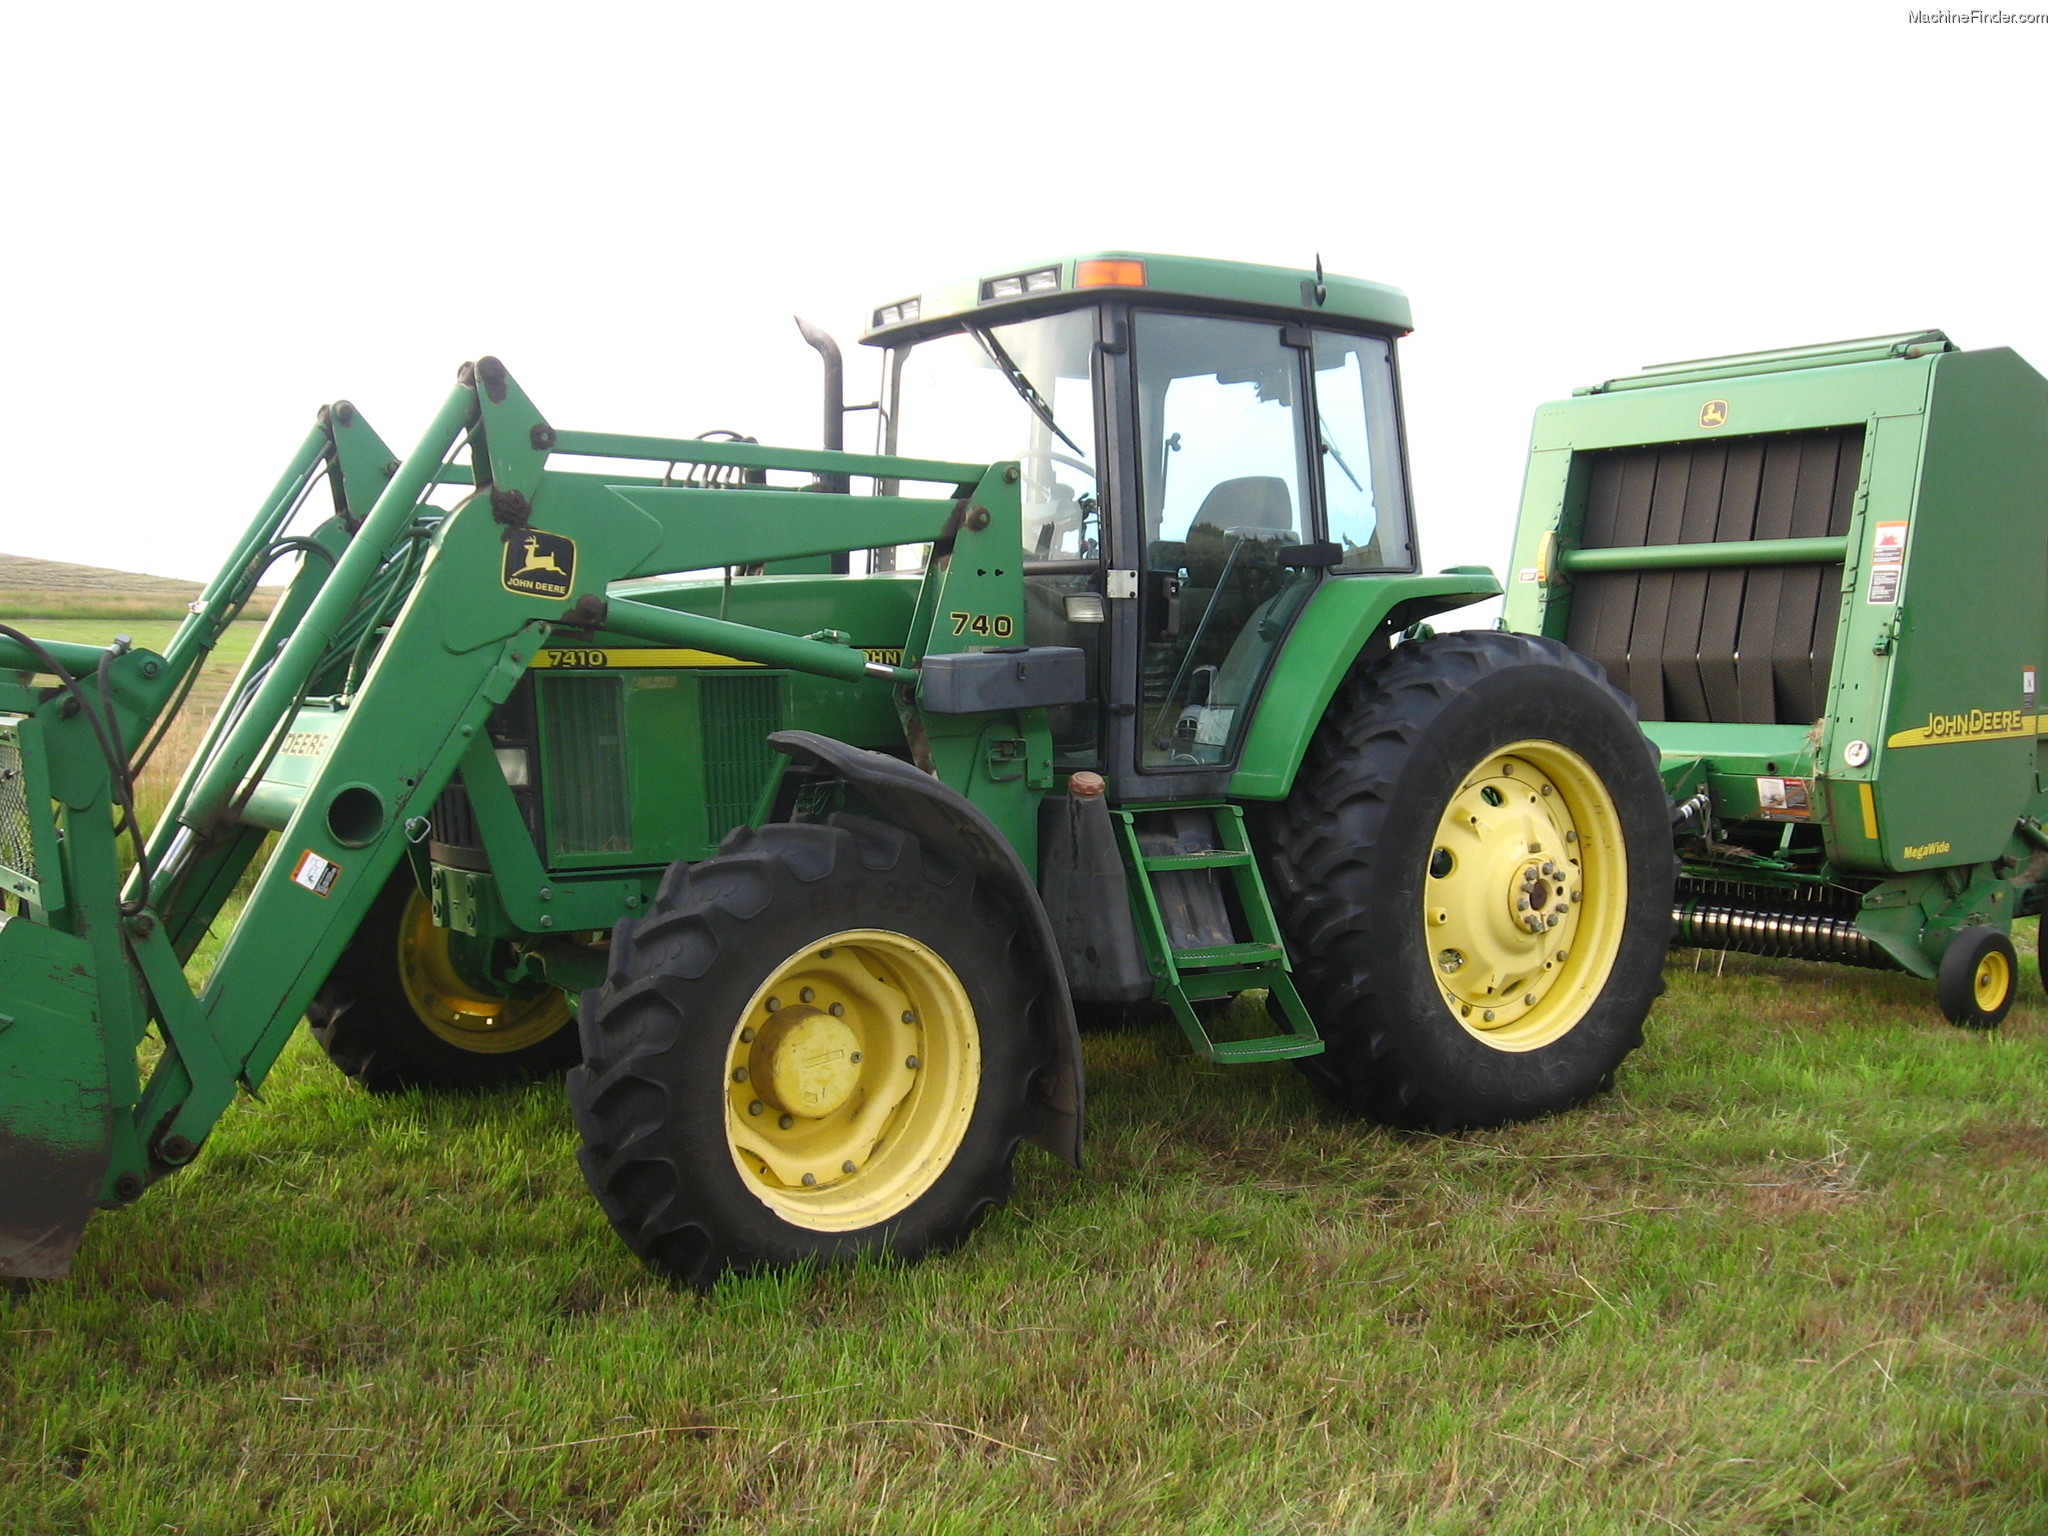 1997 John Deere 7410 Tractors - Row Crop (+100hp) - John Deere ...